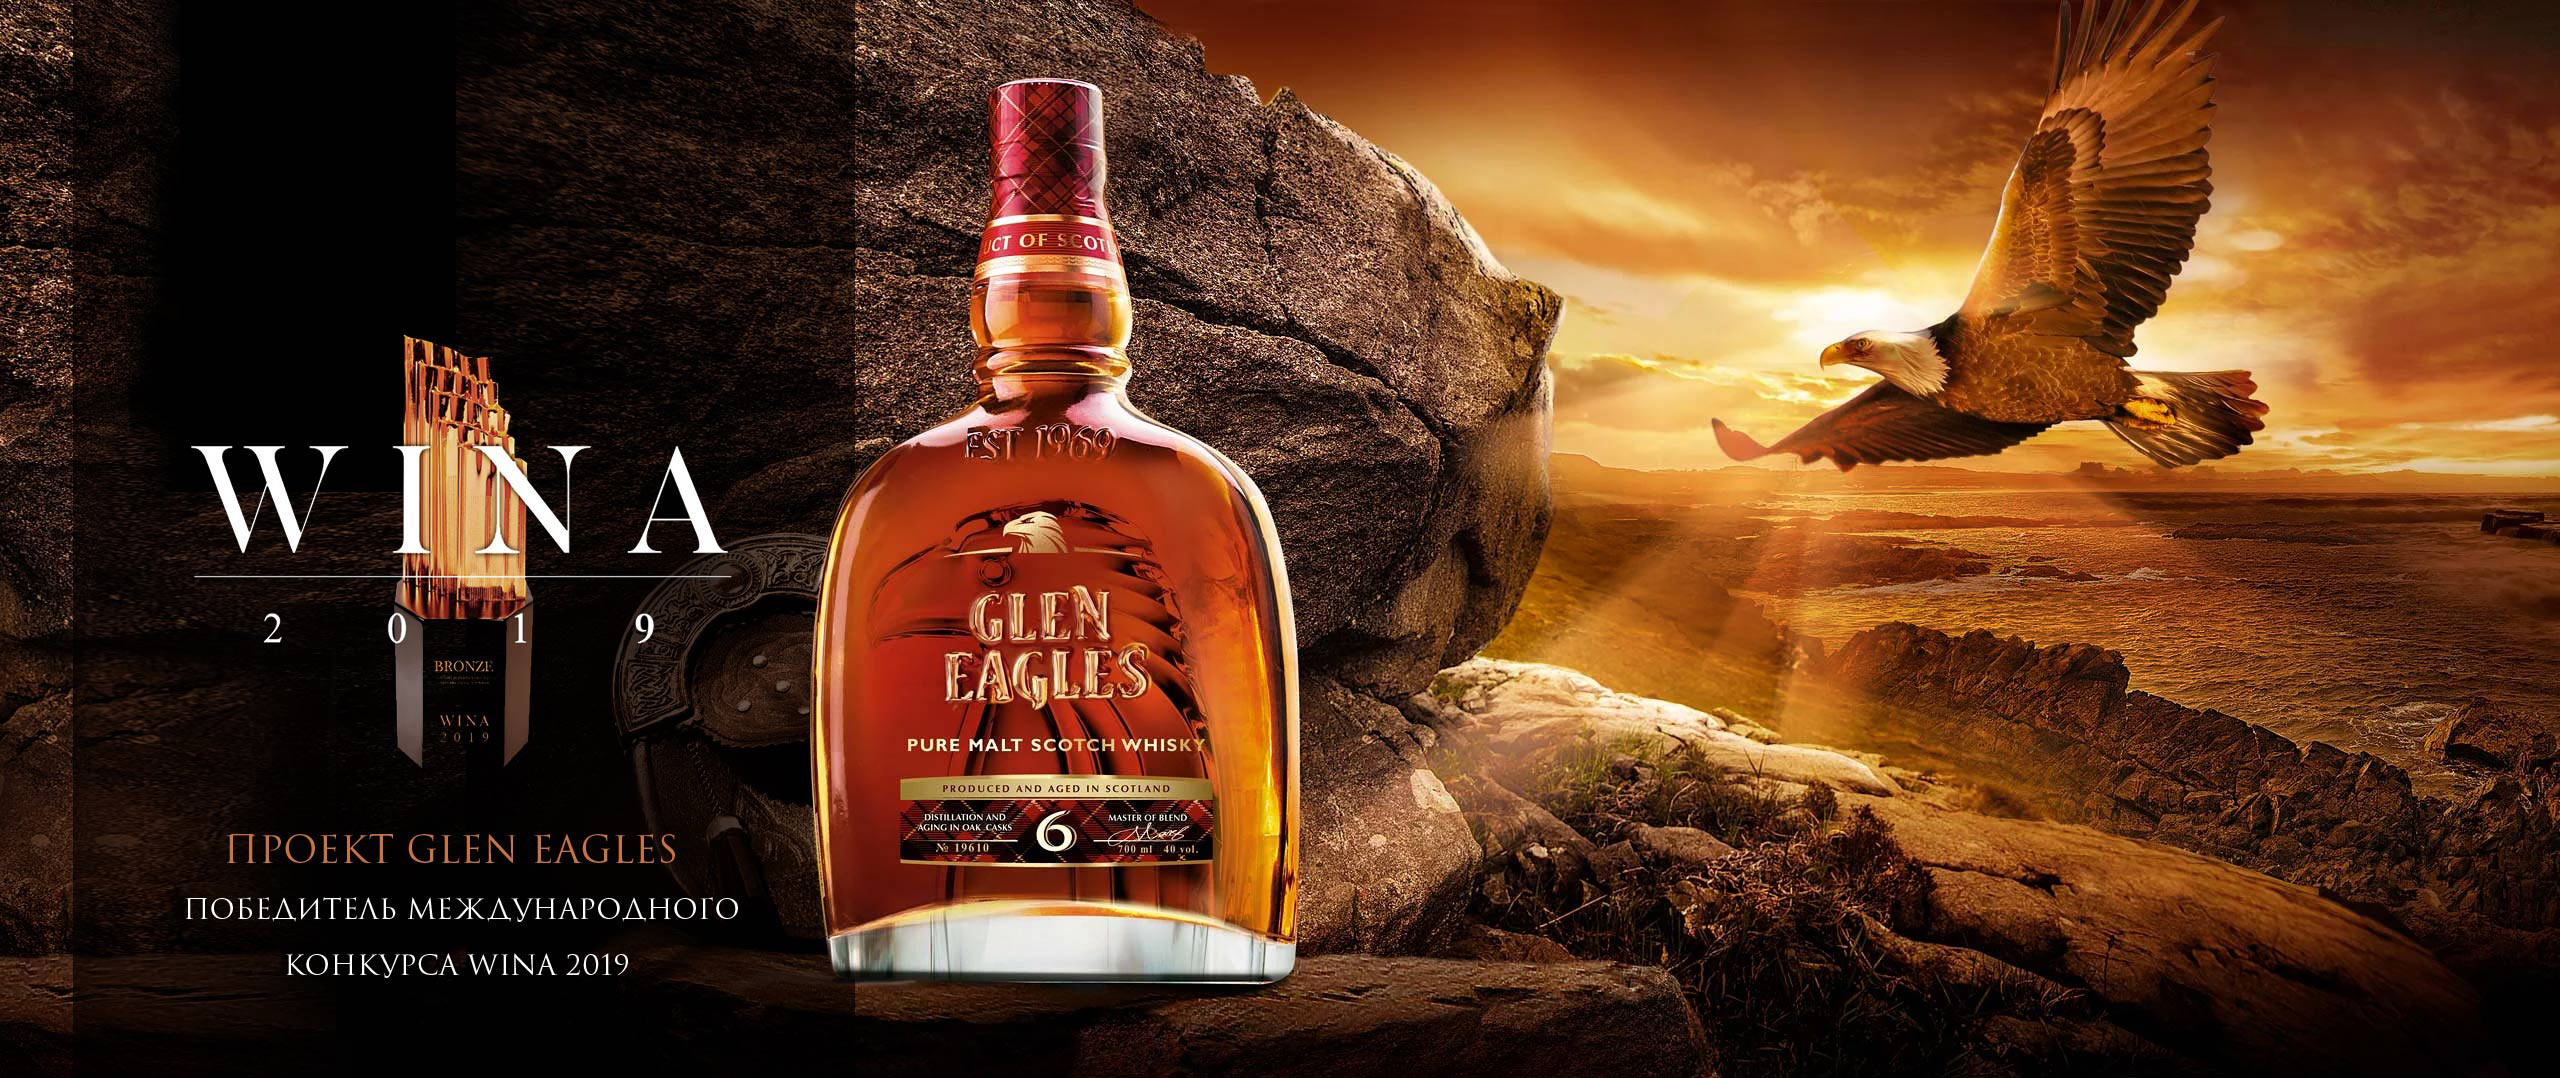 glen-eagles-whisky-packaging-design.jpg